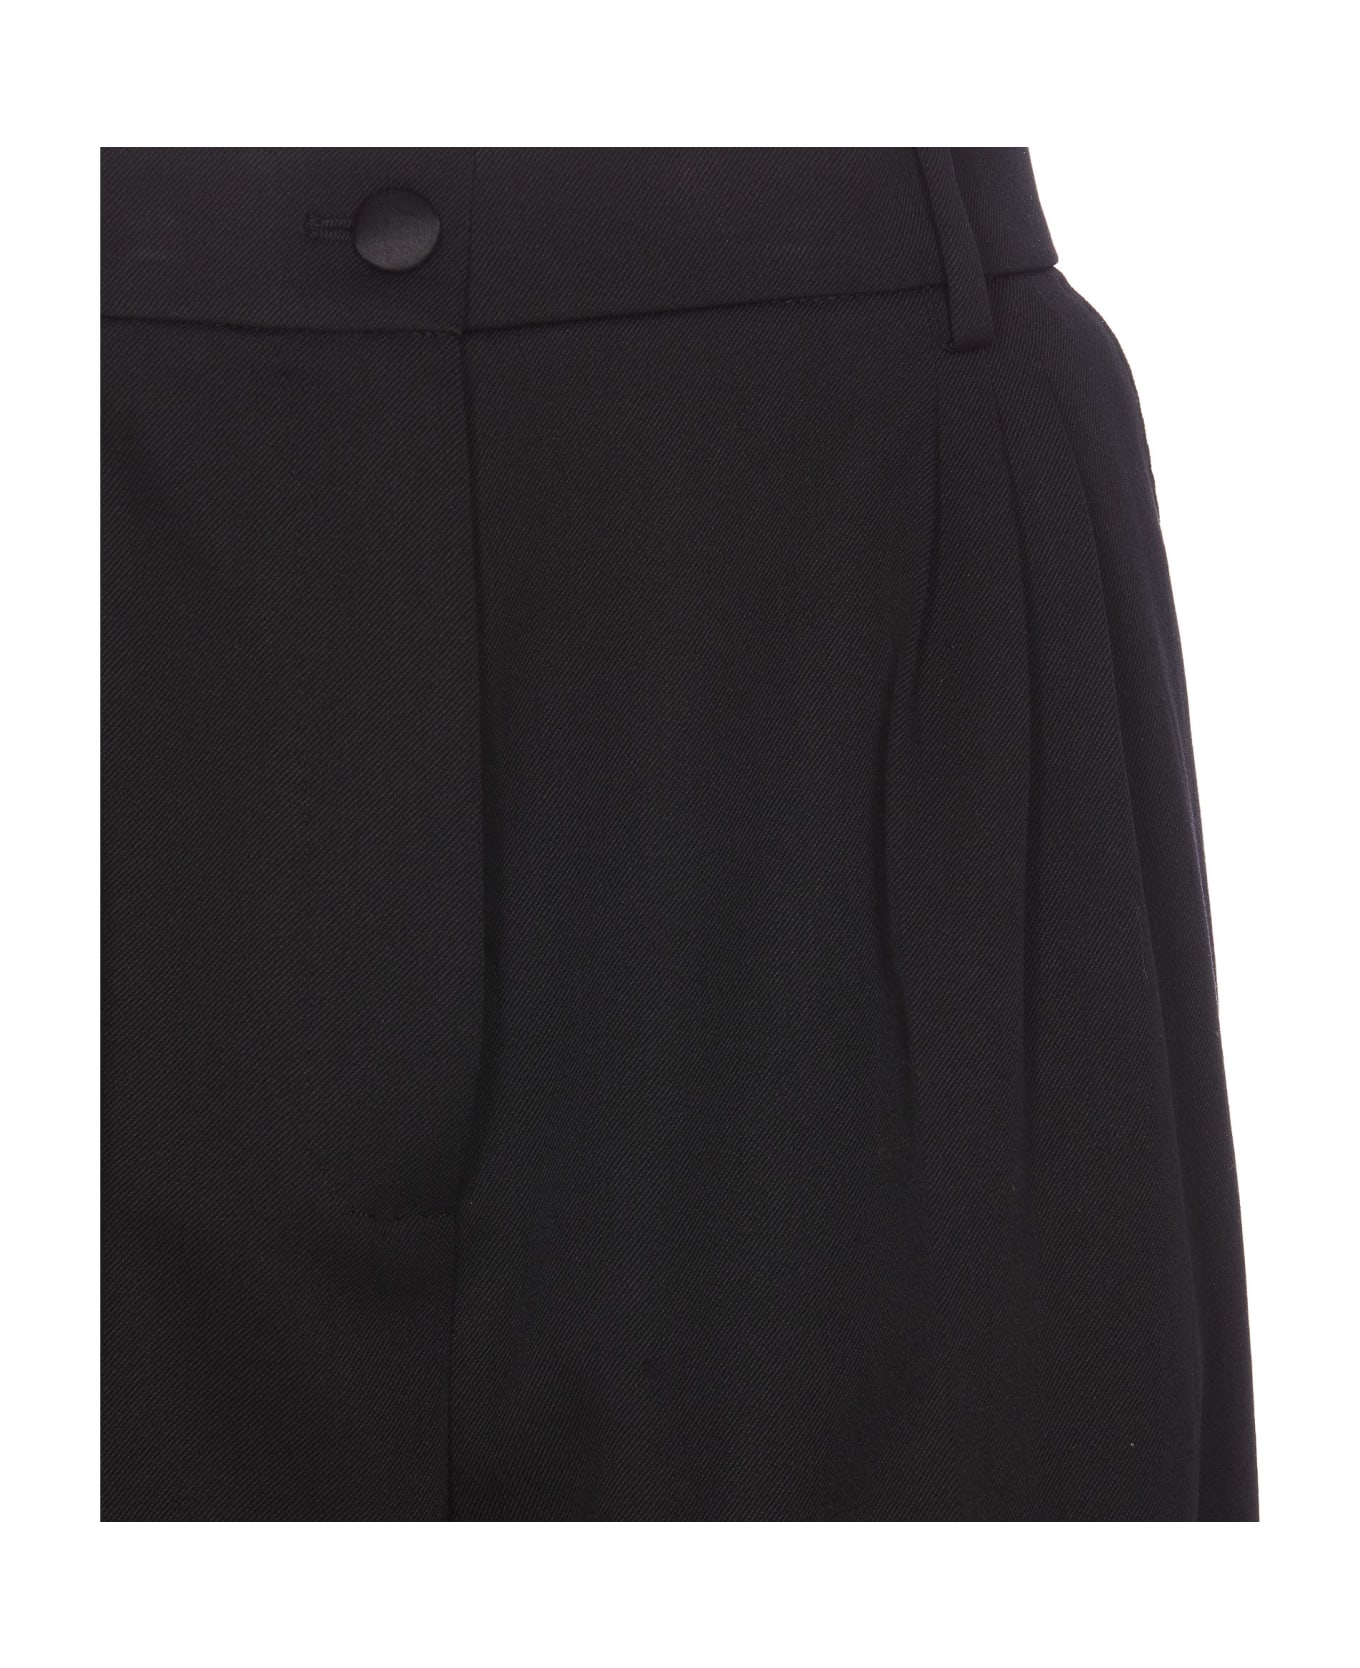 Dolce & Gabbana Gabardine Bermuda Shorts - Black